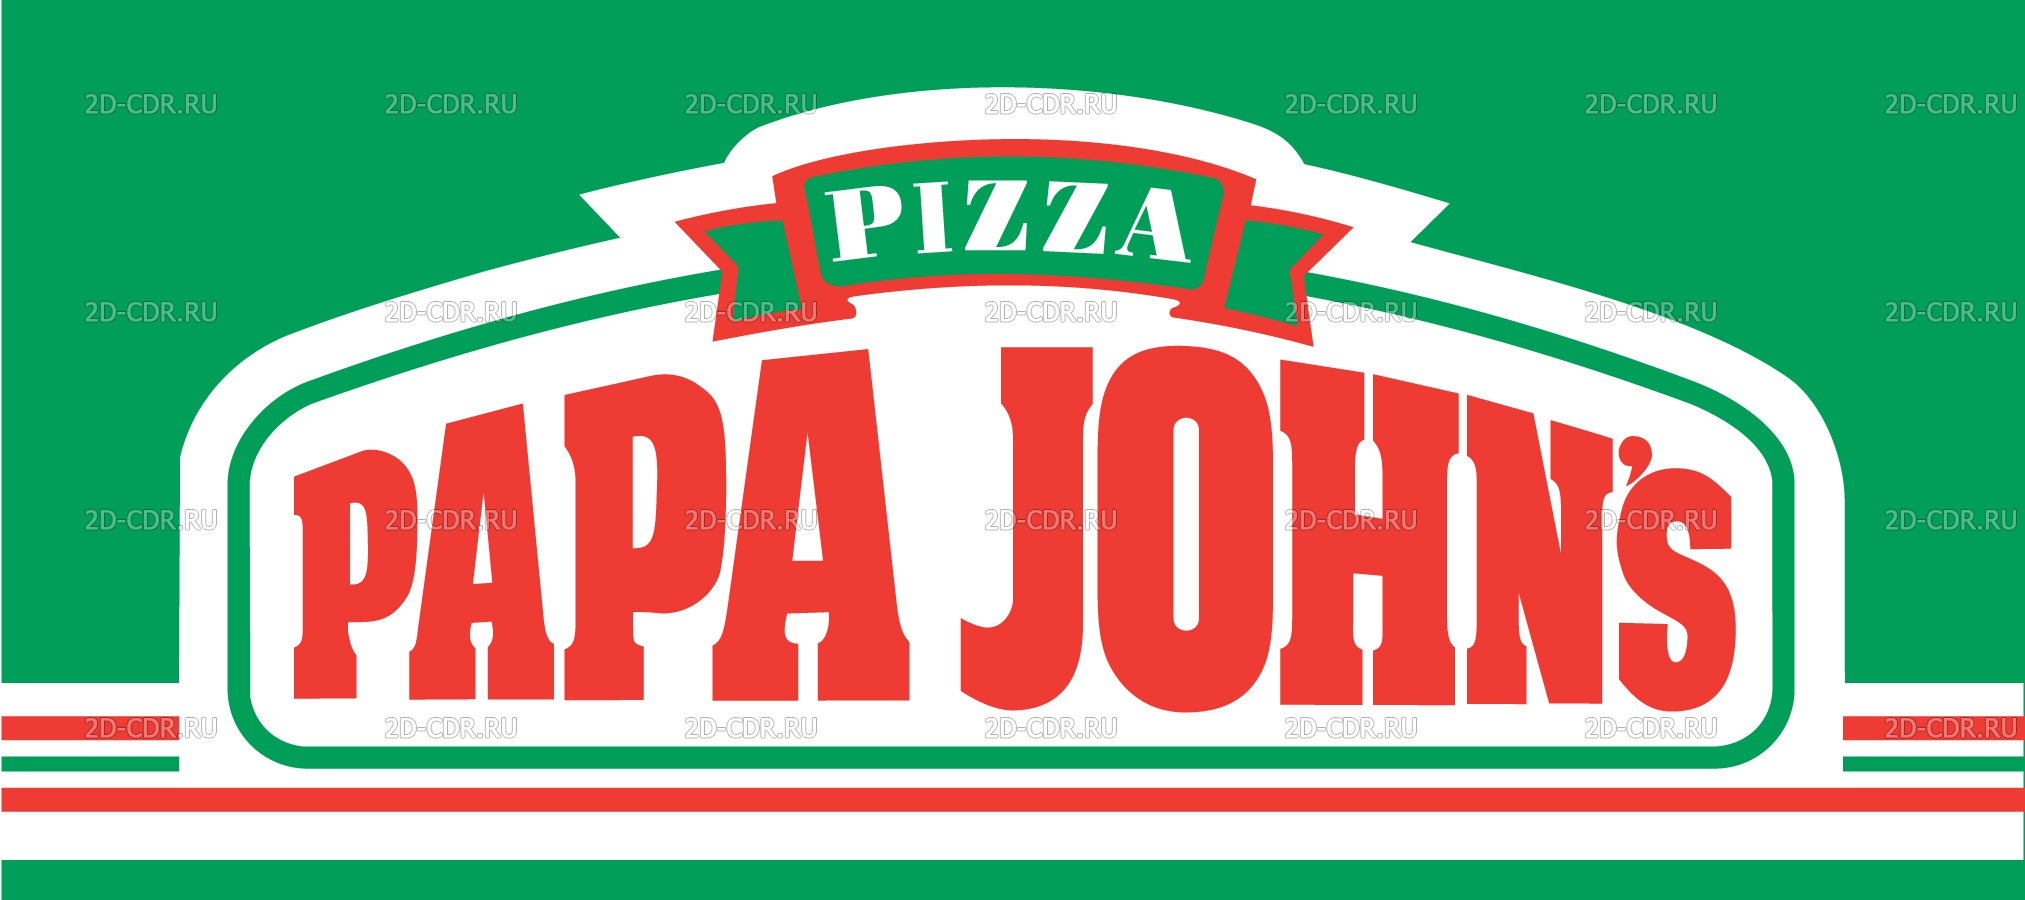 Papa Johns Pizza. 